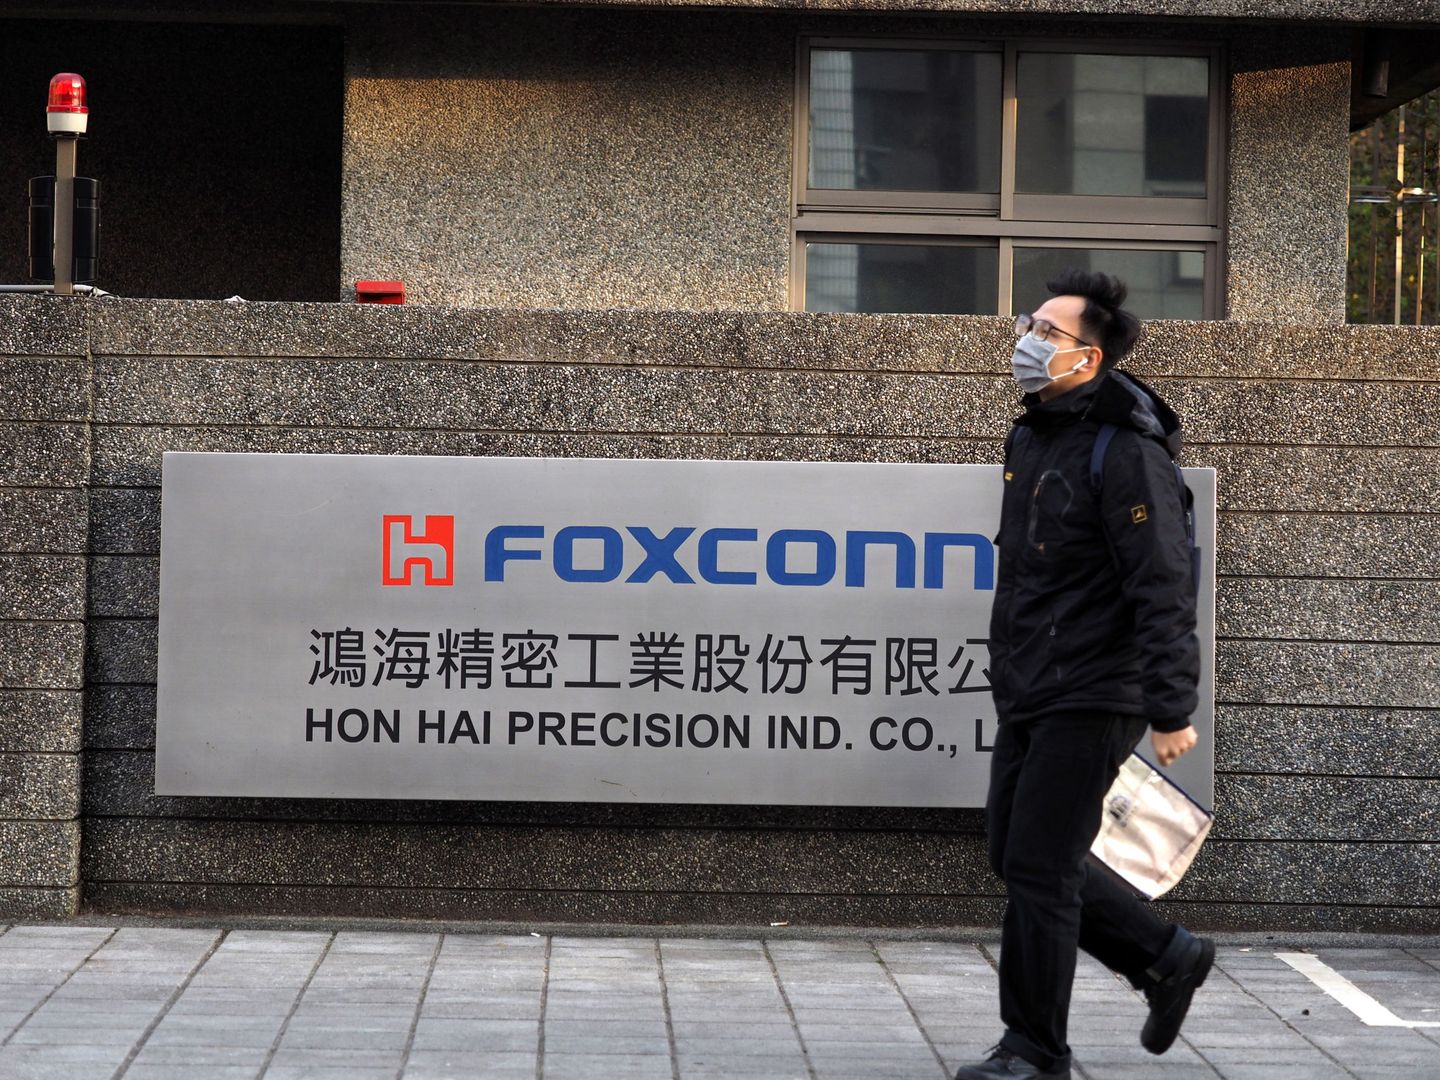 Oficinas de Foxconn, el mayor proveedor de Apple. (Reuters)